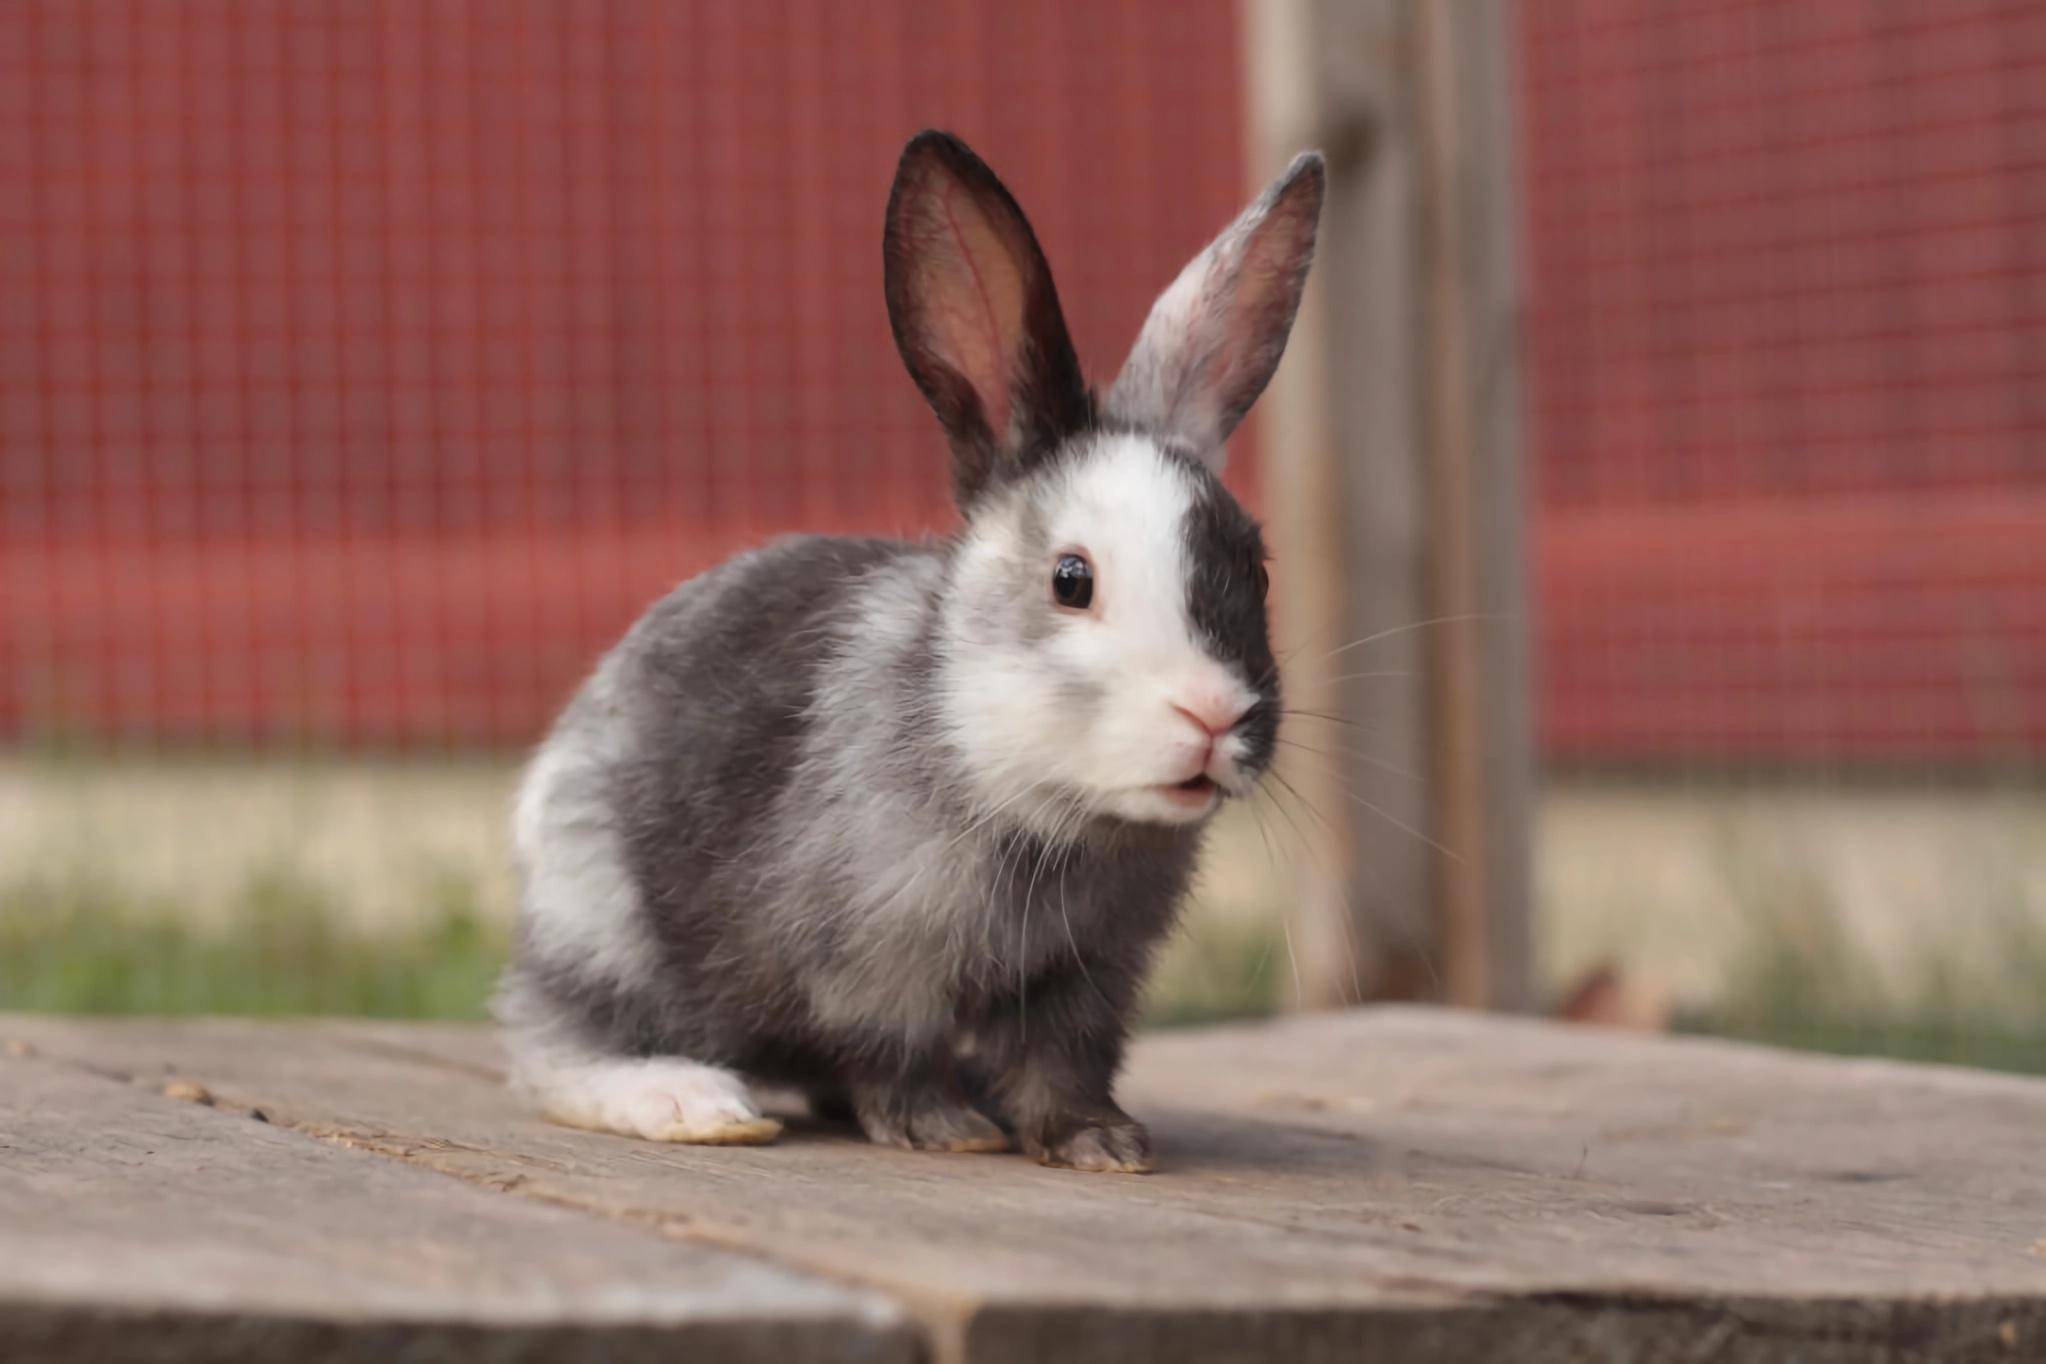 探秘:宠物世界之兔子,那些受欢迎的30种兔子,你喜欢哪几种呢?